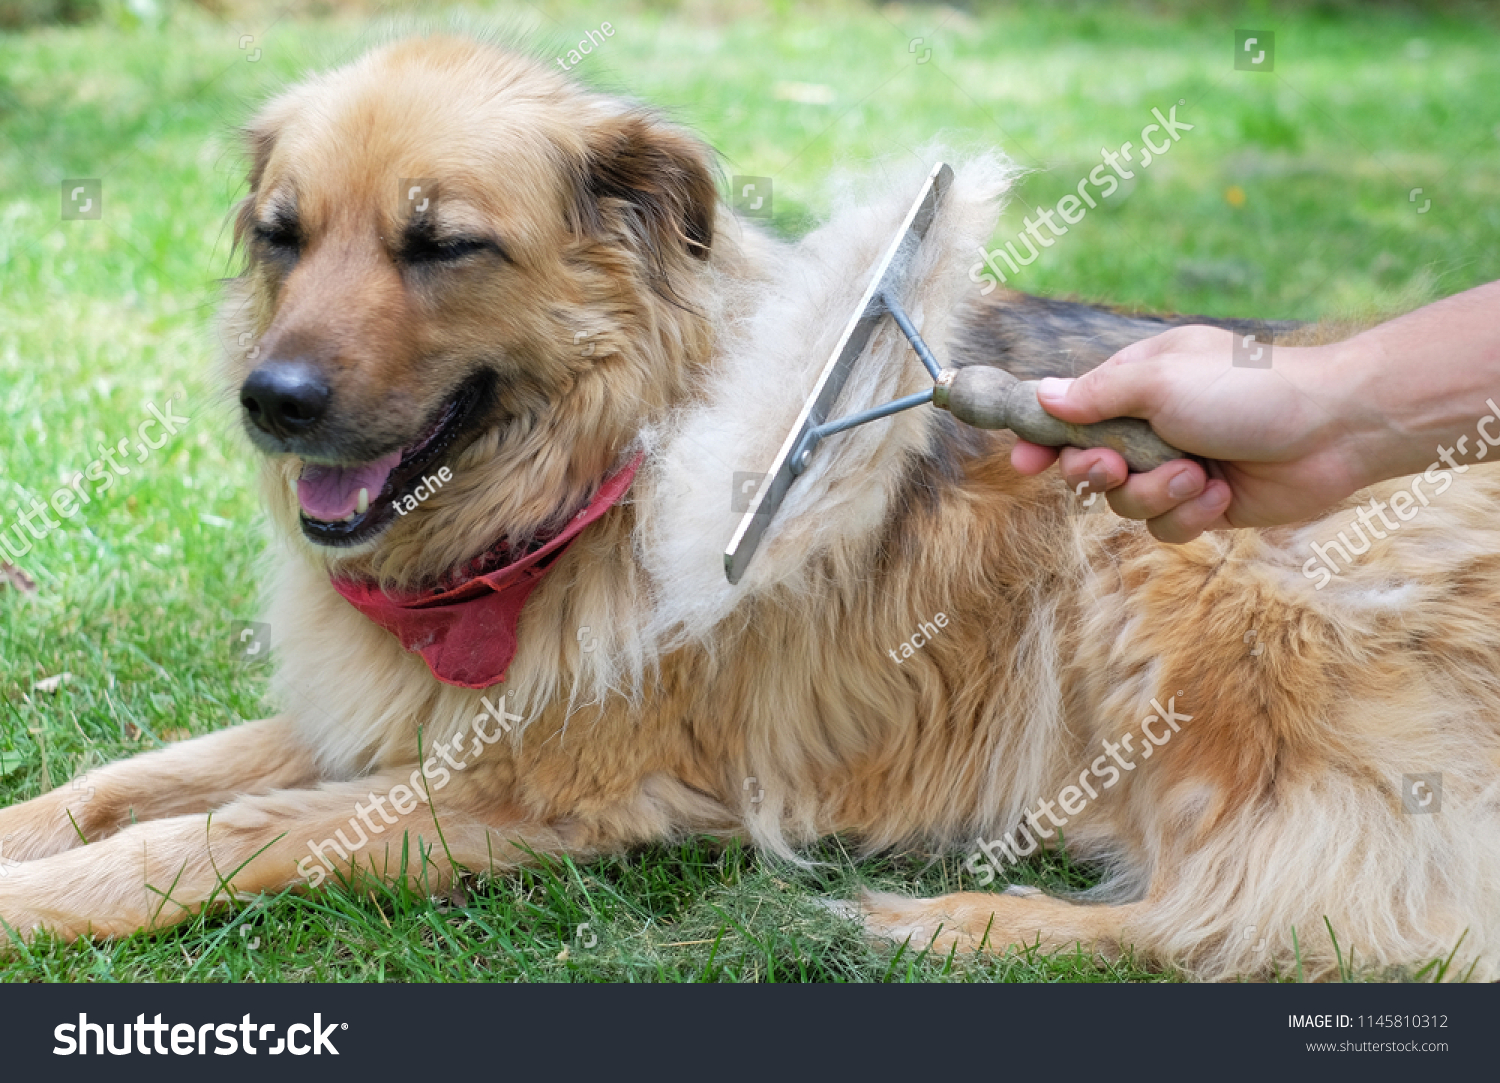 big dog brush